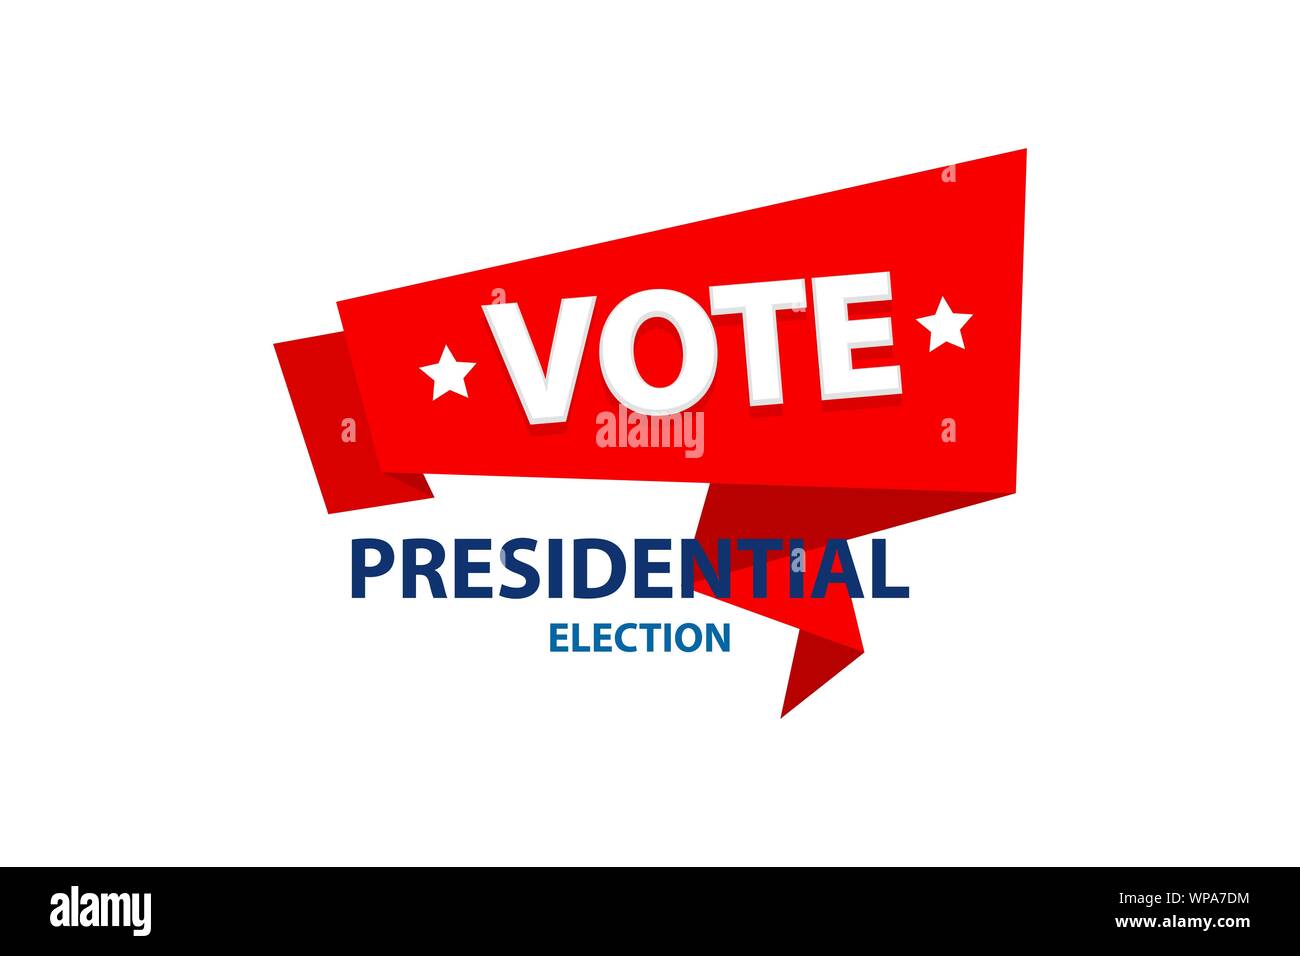 2020 Abstimmung in den USA der US-amerikanische Präsident banner Stock Vektor